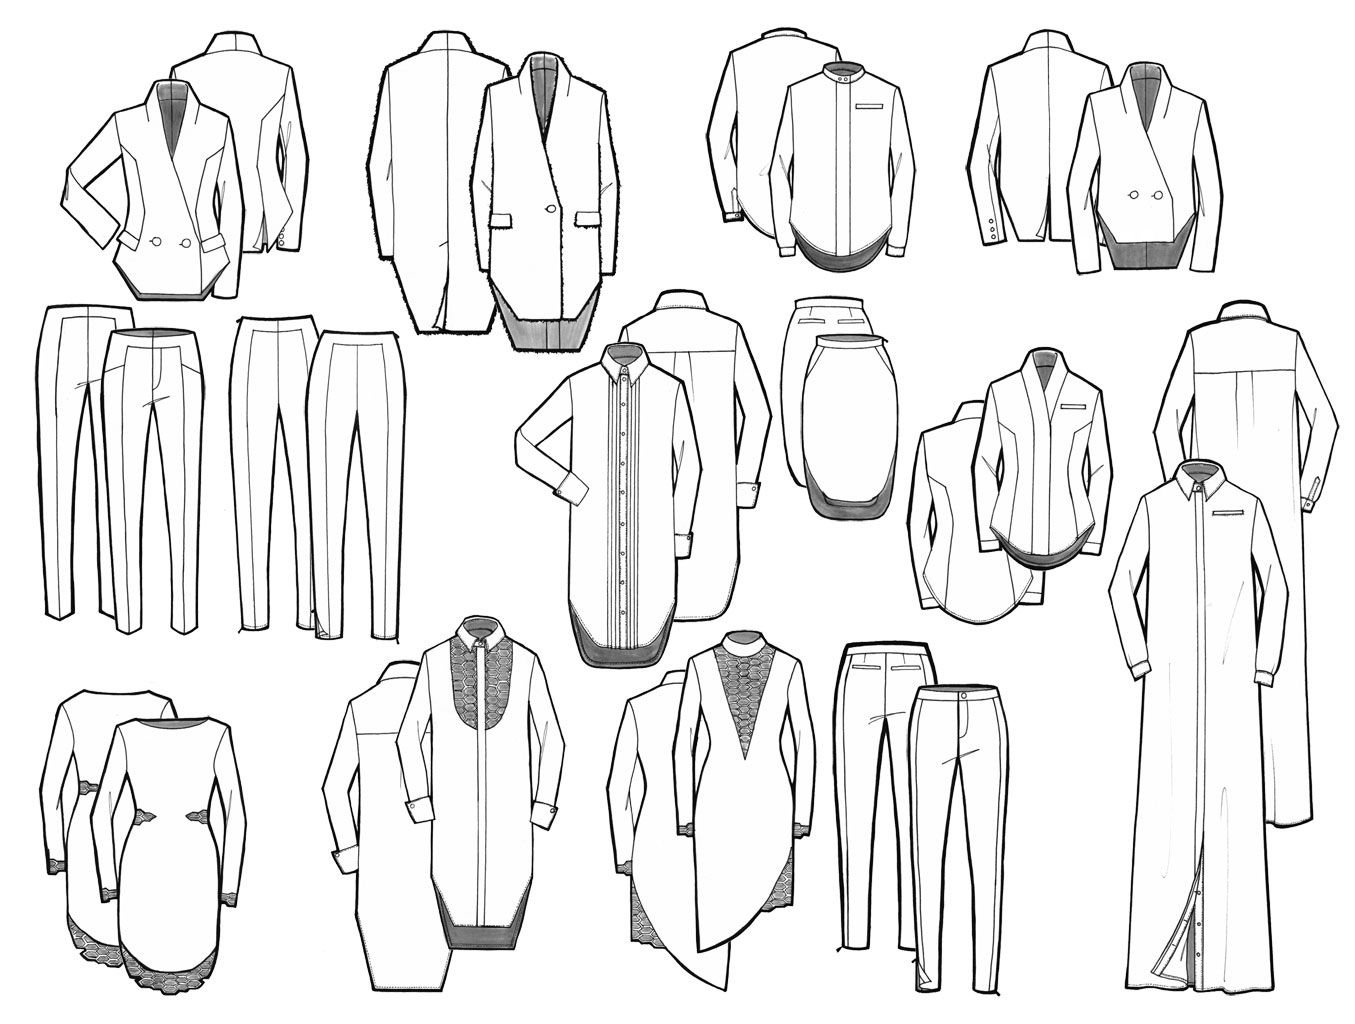 Технический эскиз одежды